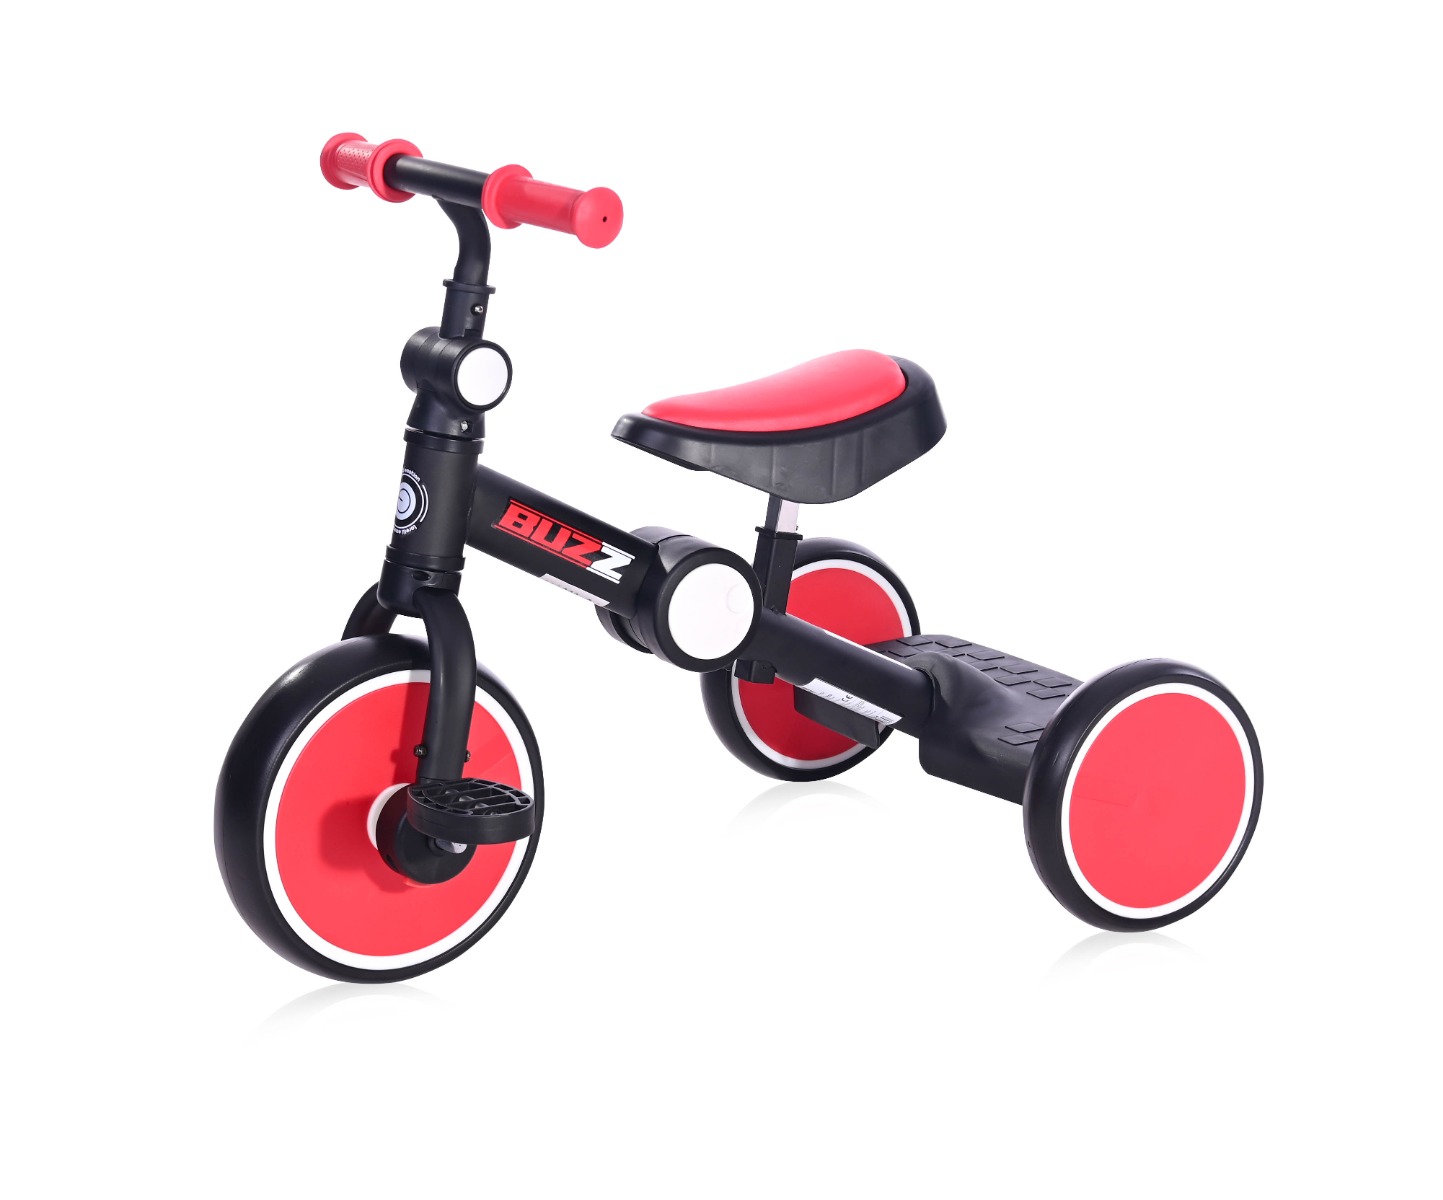 Tricicleta pentru copii, complet pliabila, Lorelli Buzz, Black Red La Plimbare 2023-09-25